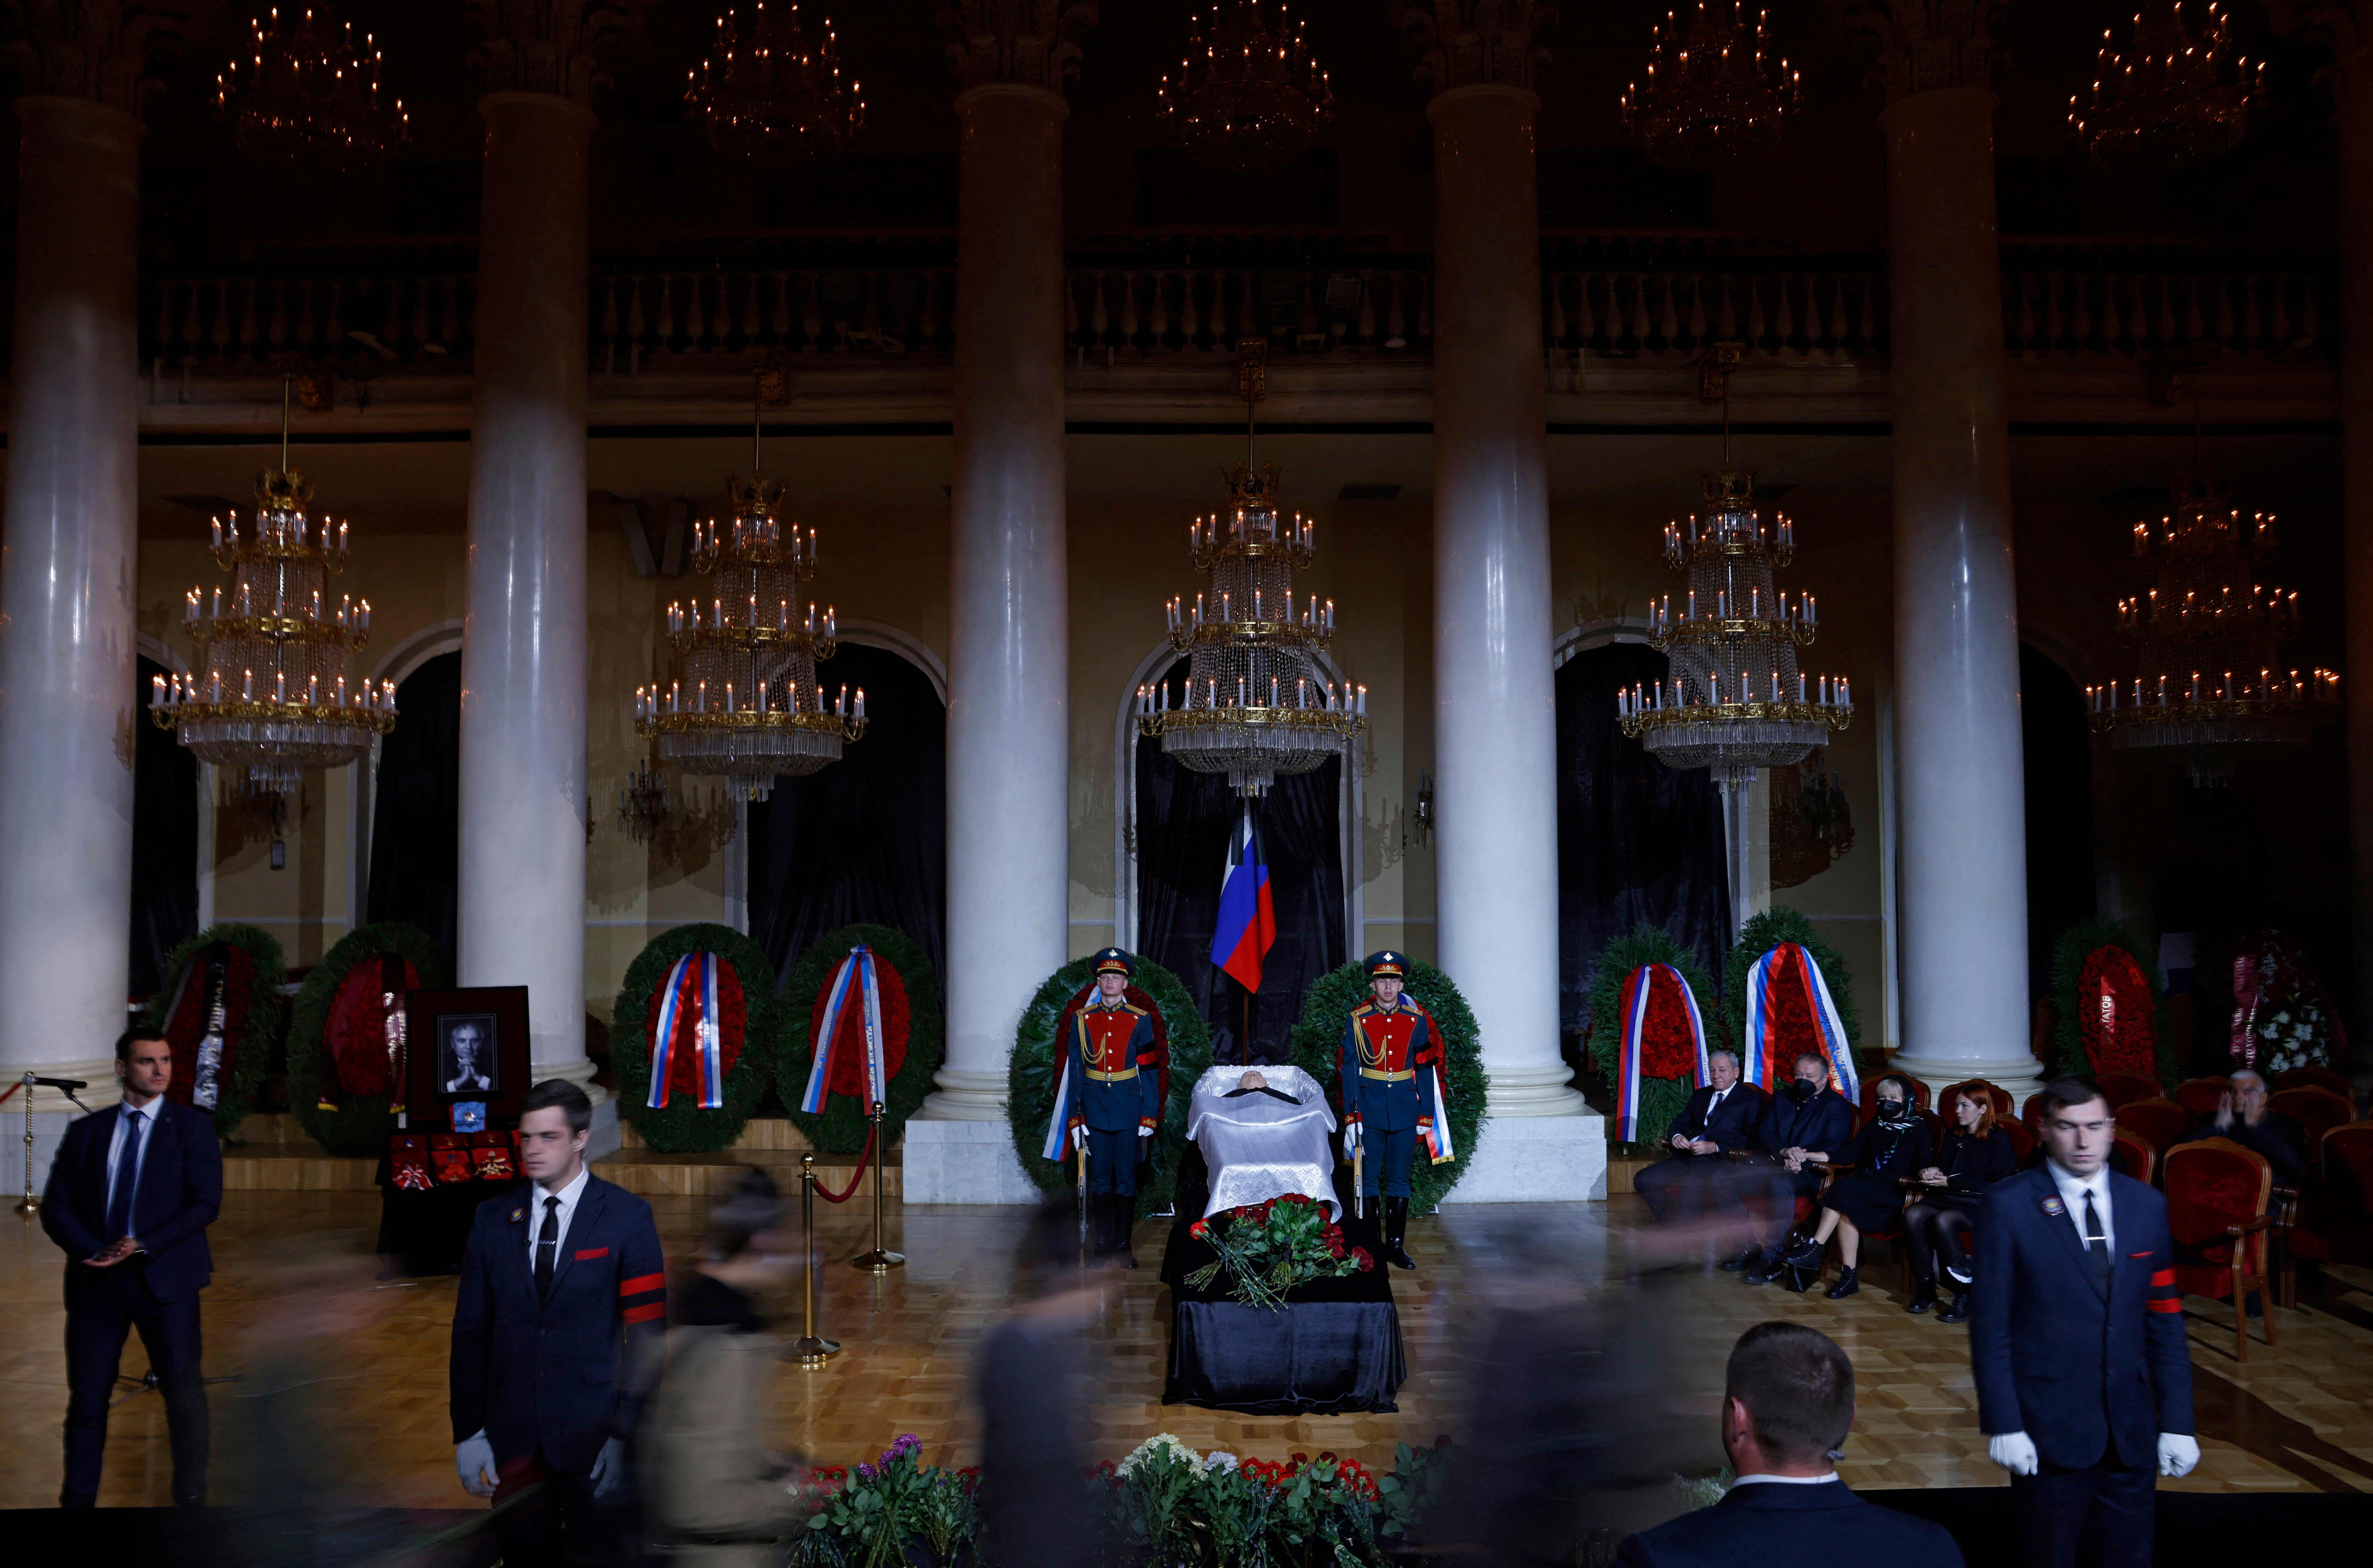 Колонный зал Дома Союзов, в котором проходит церемония прощания с Михаилом Горбачевым. Фото Evgenia NOVOZHENINA / POOL / AFP / Scanpix / Leta.